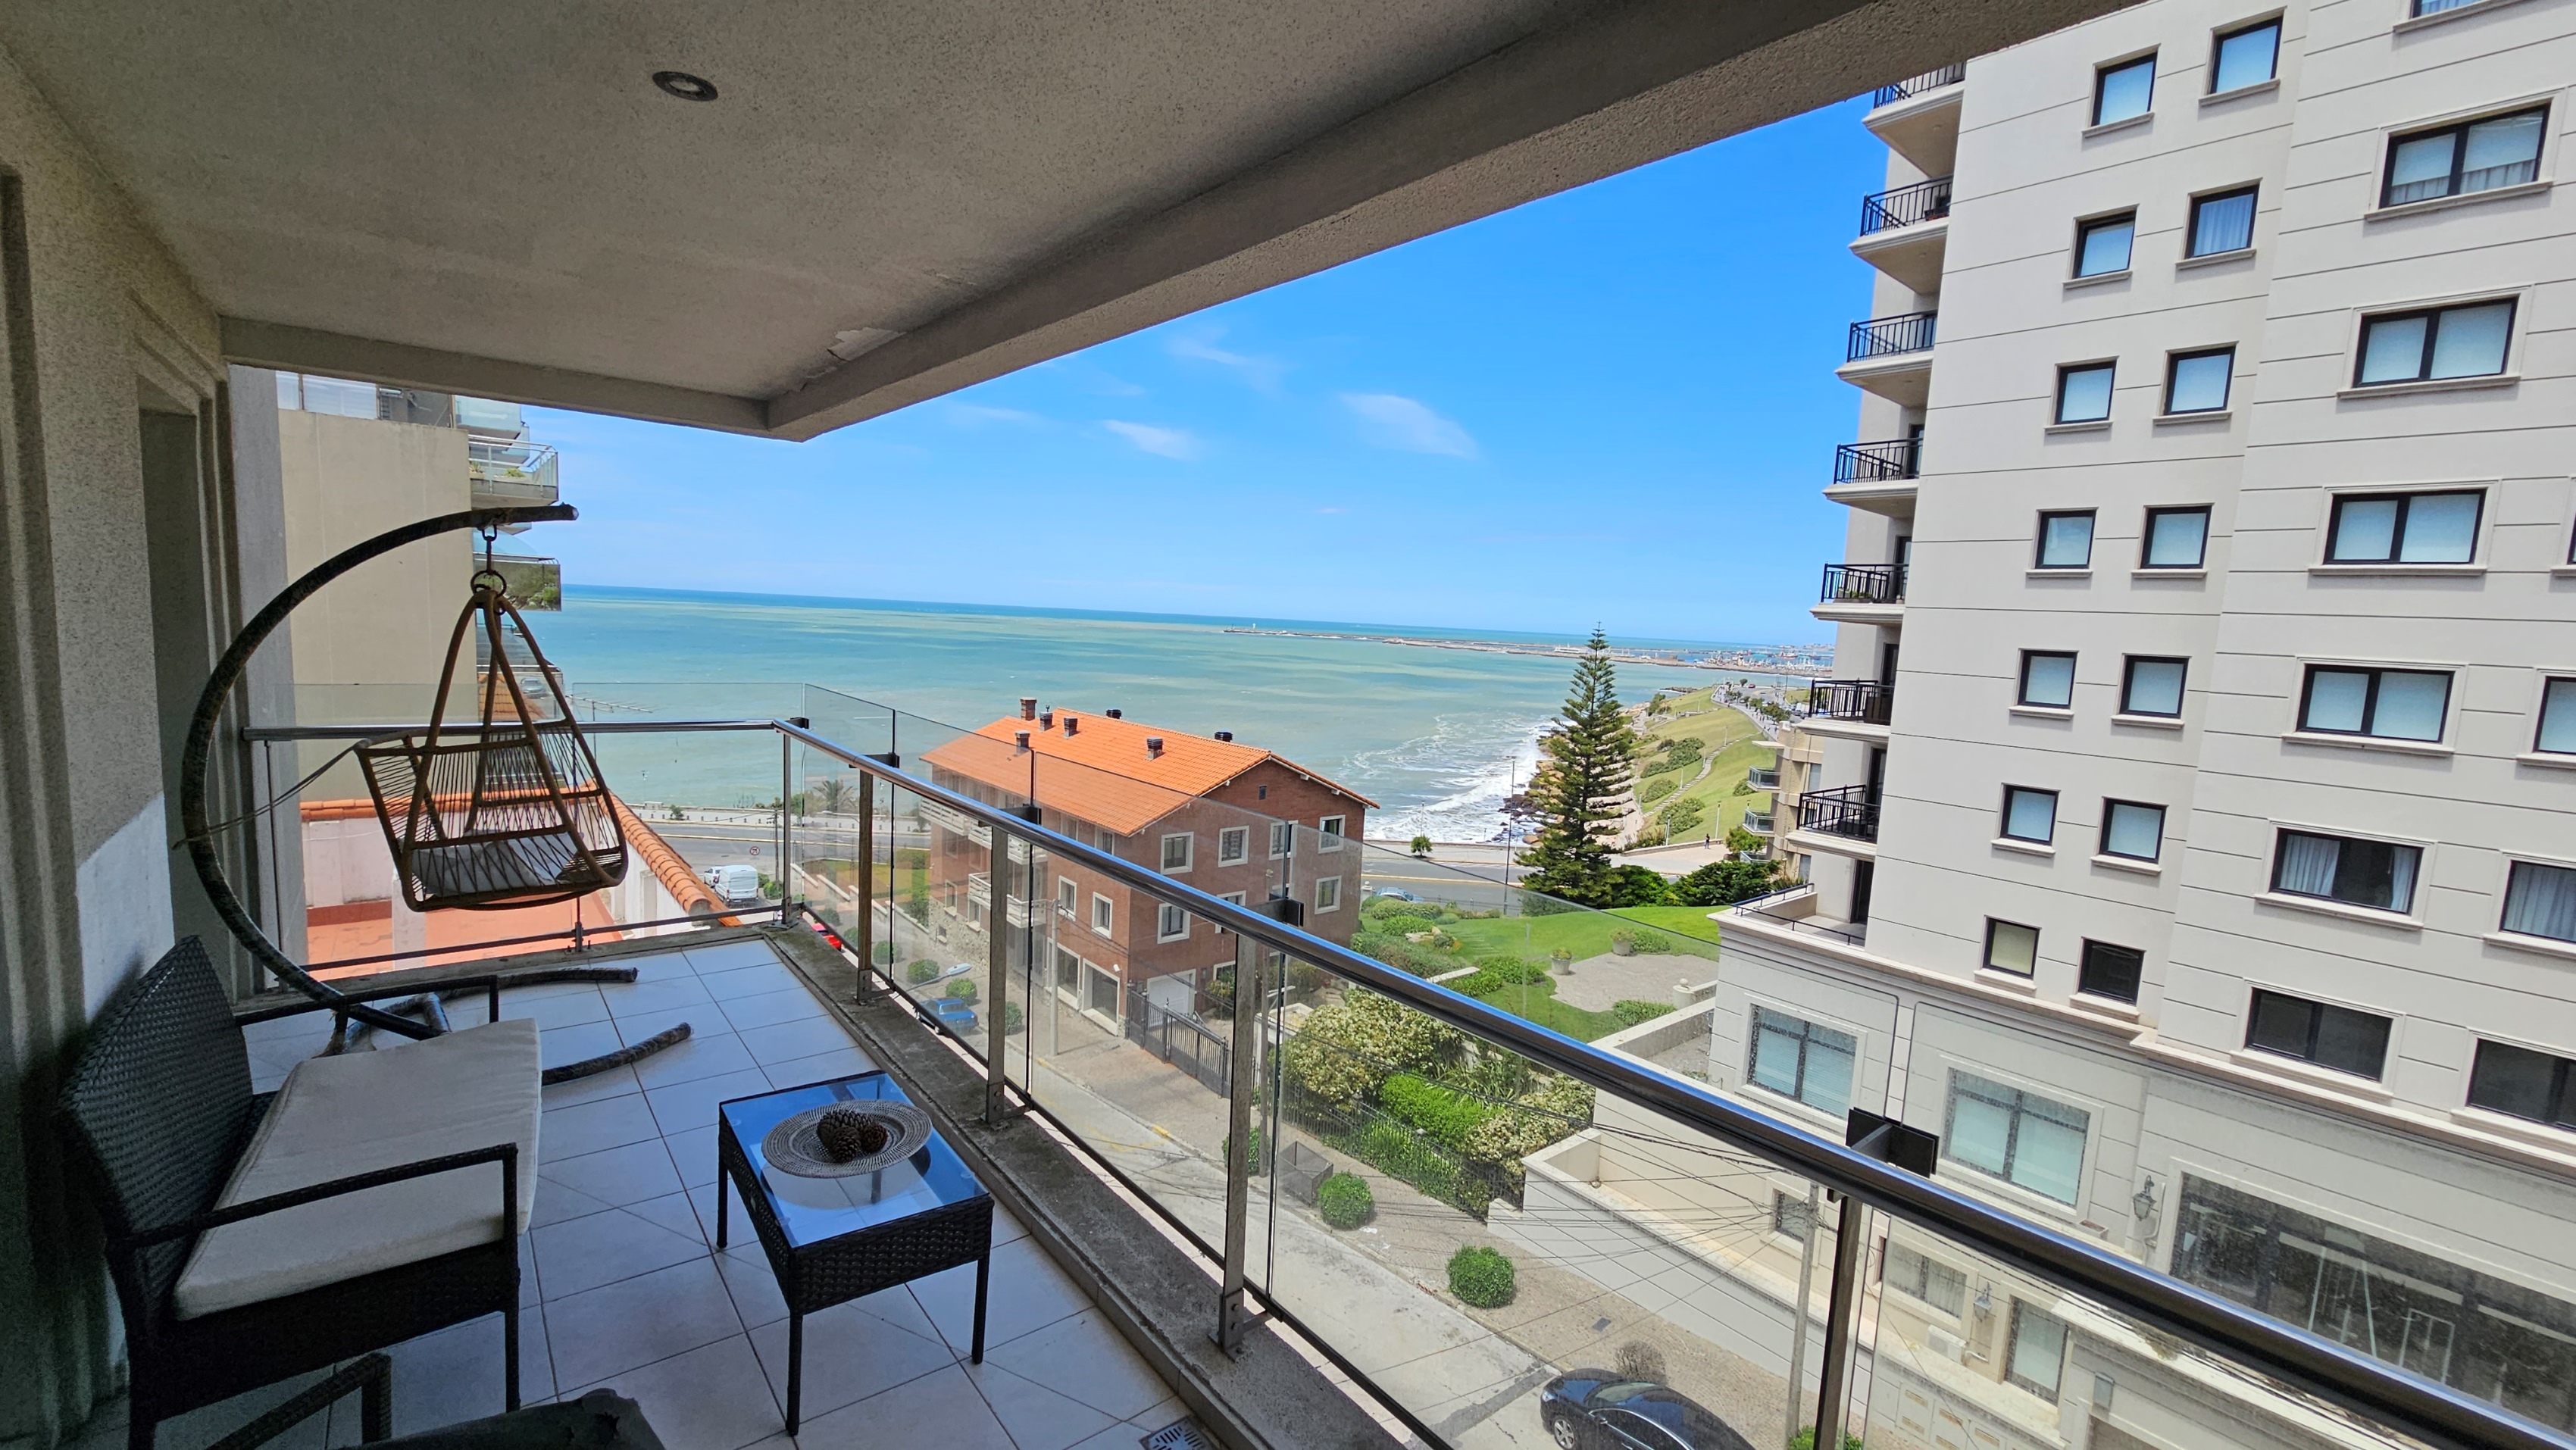 En venta departamento de 4 ambientes vista al mar, con cochera doble. Zona Playa Chica.  Edificio "Villa Lujan" 